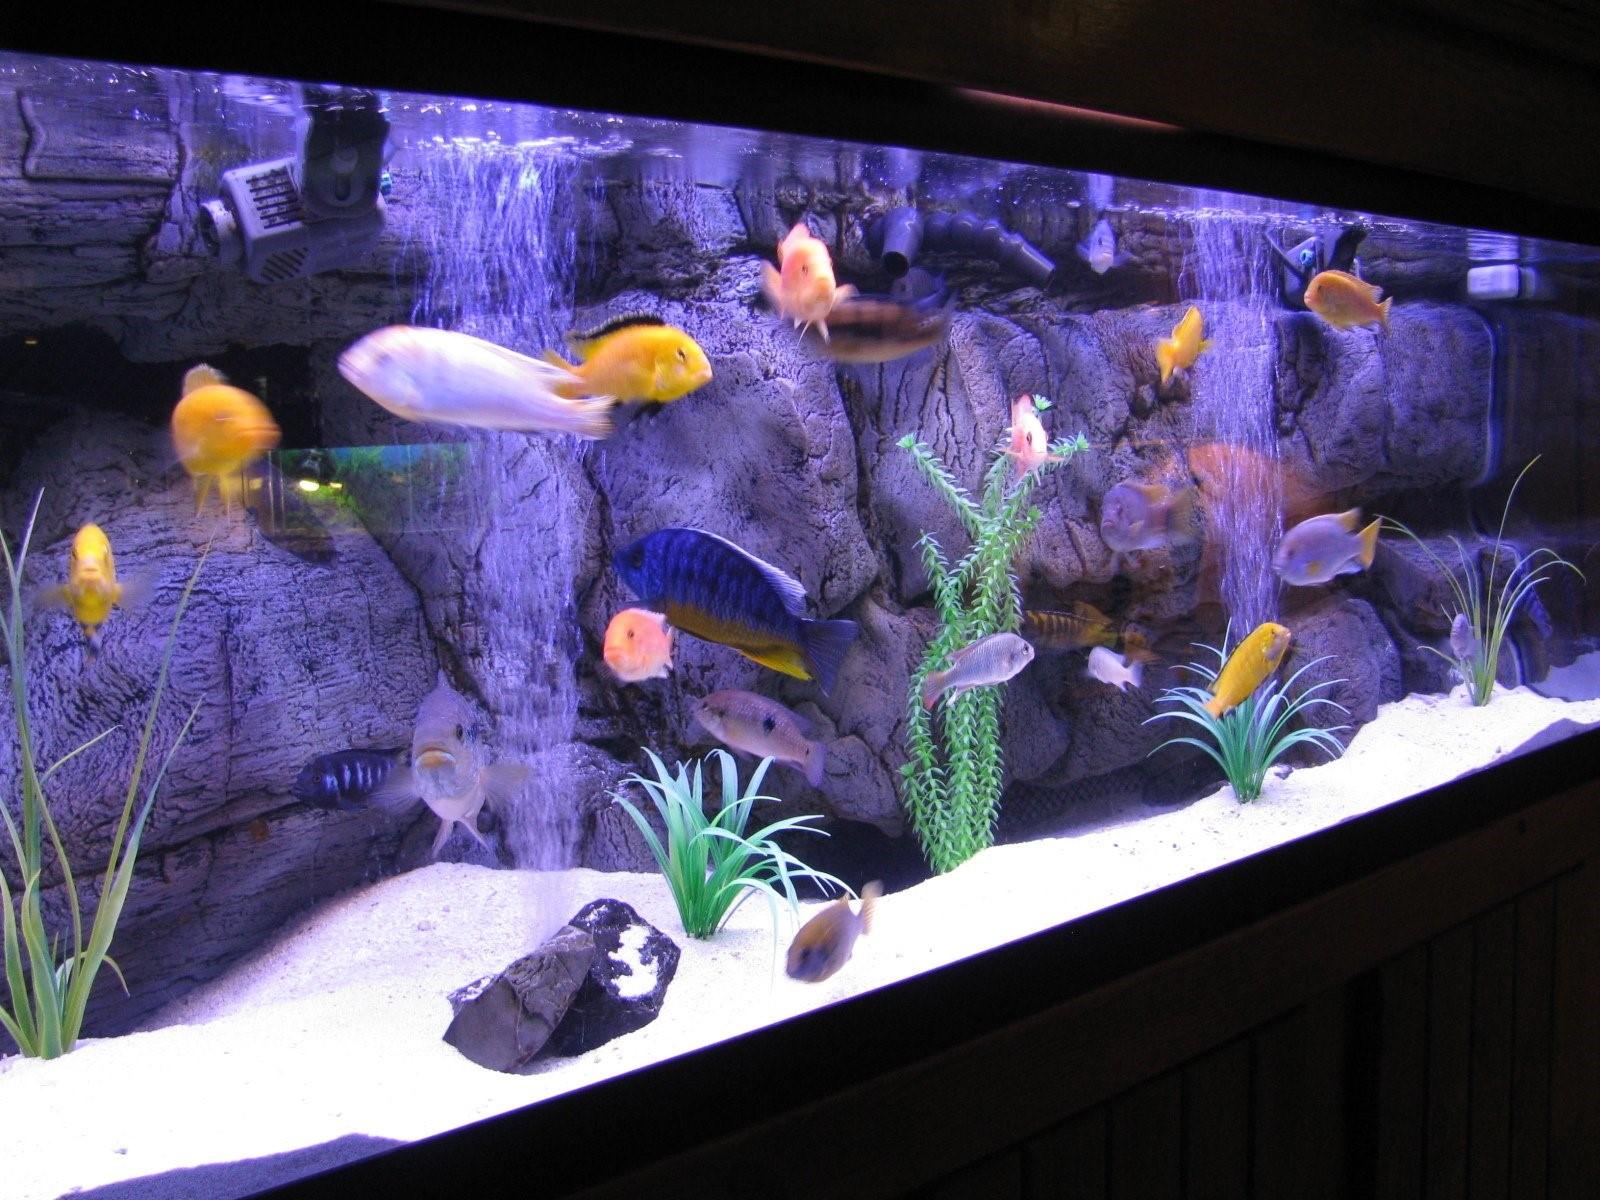 аквариум с рыбками фото